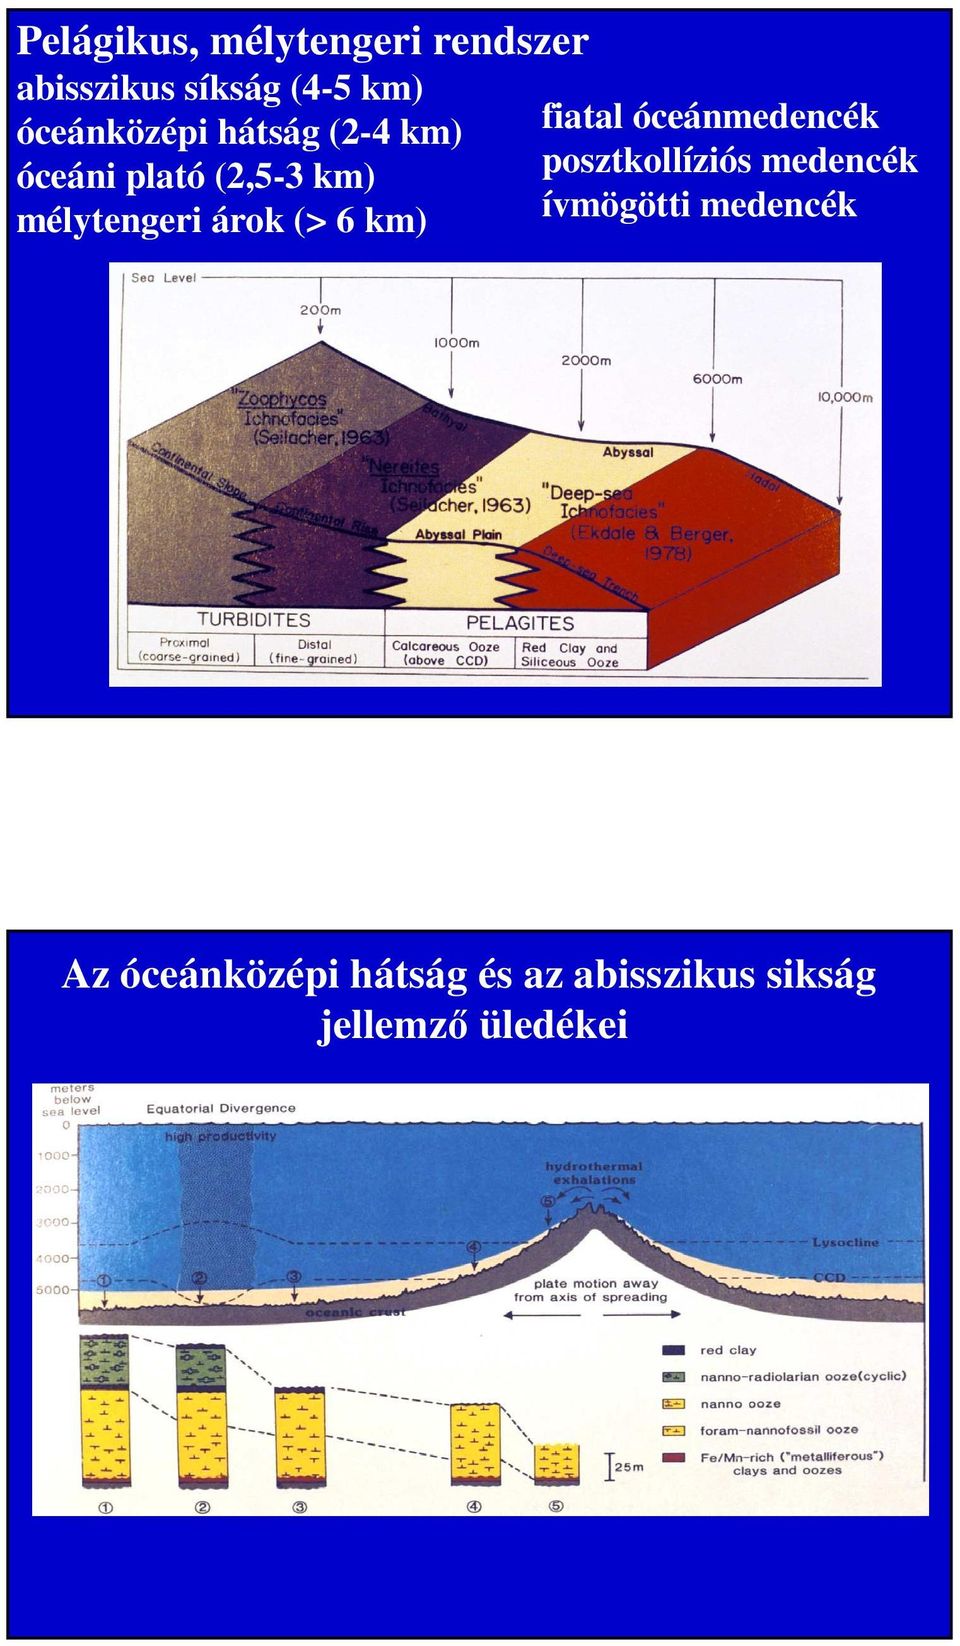 (2,5-3 km) posztkollíziós medencék mélytengeri árok (> 6 km)